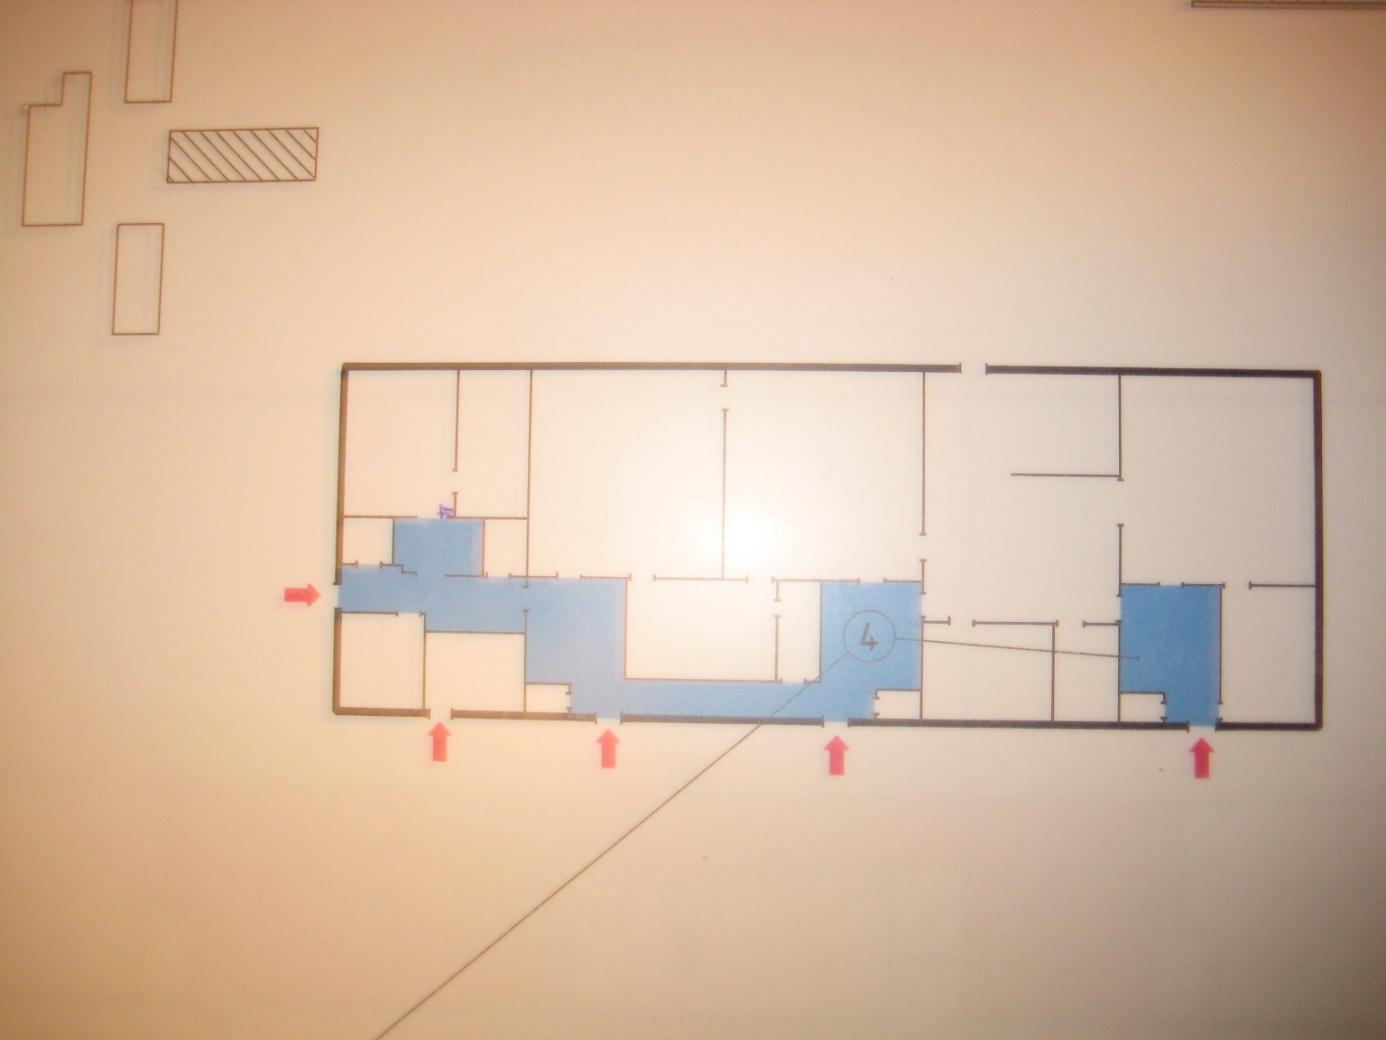 Orieteringsritning, sektion 4, över den branddrabbade byggnaden. Den brandhärjade byggnaden är byggnadtekniskt indelad i ett antal brandceller, EI30, se ritning nedan.